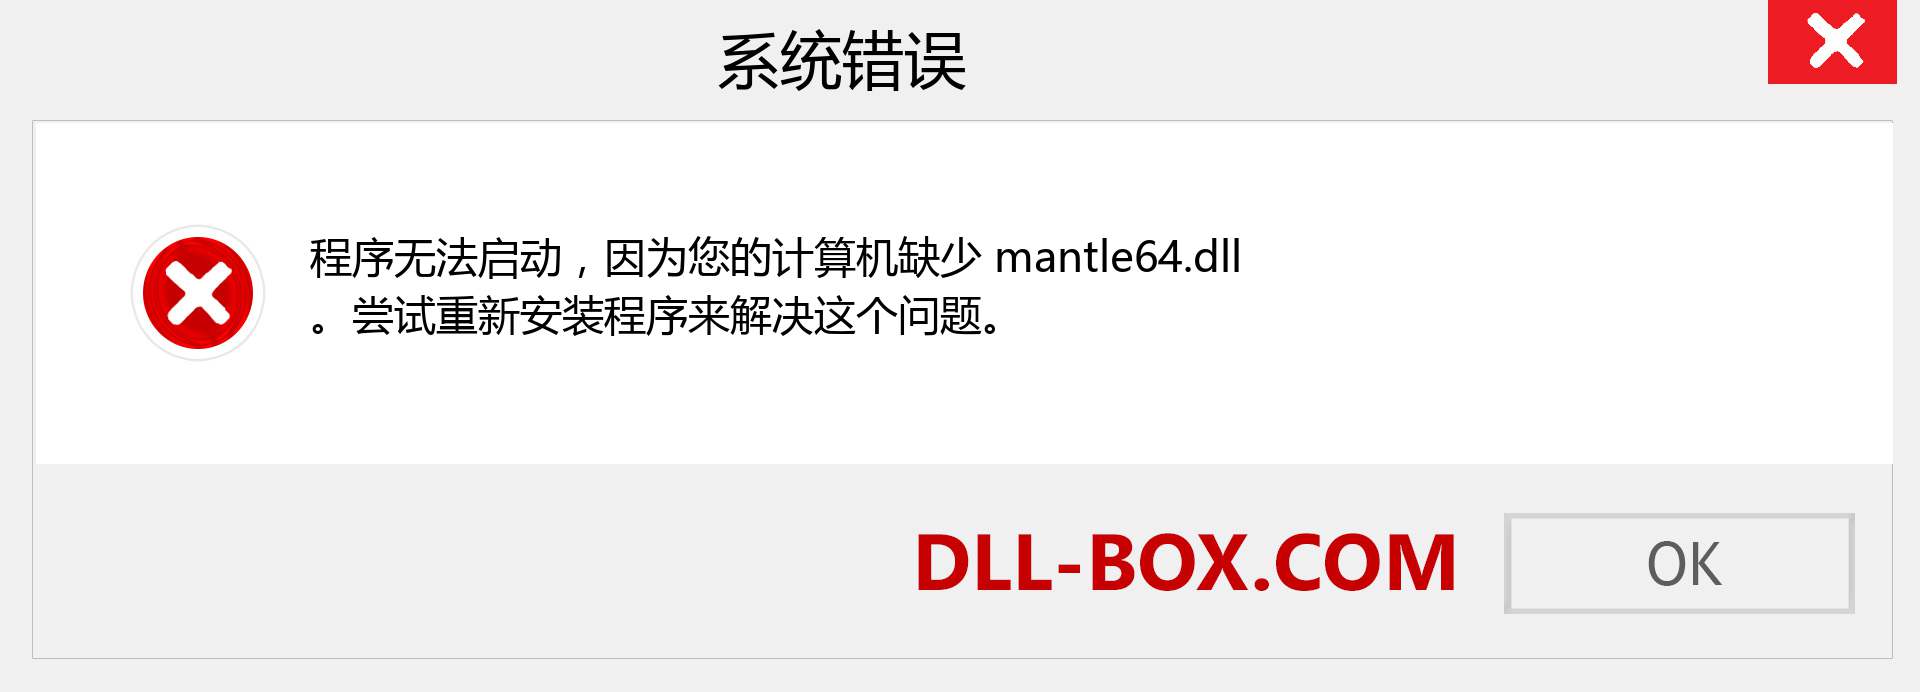 mantle64.dll 文件丢失？。 适用于 Windows 7、8、10 的下载 - 修复 Windows、照片、图像上的 mantle64 dll 丢失错误